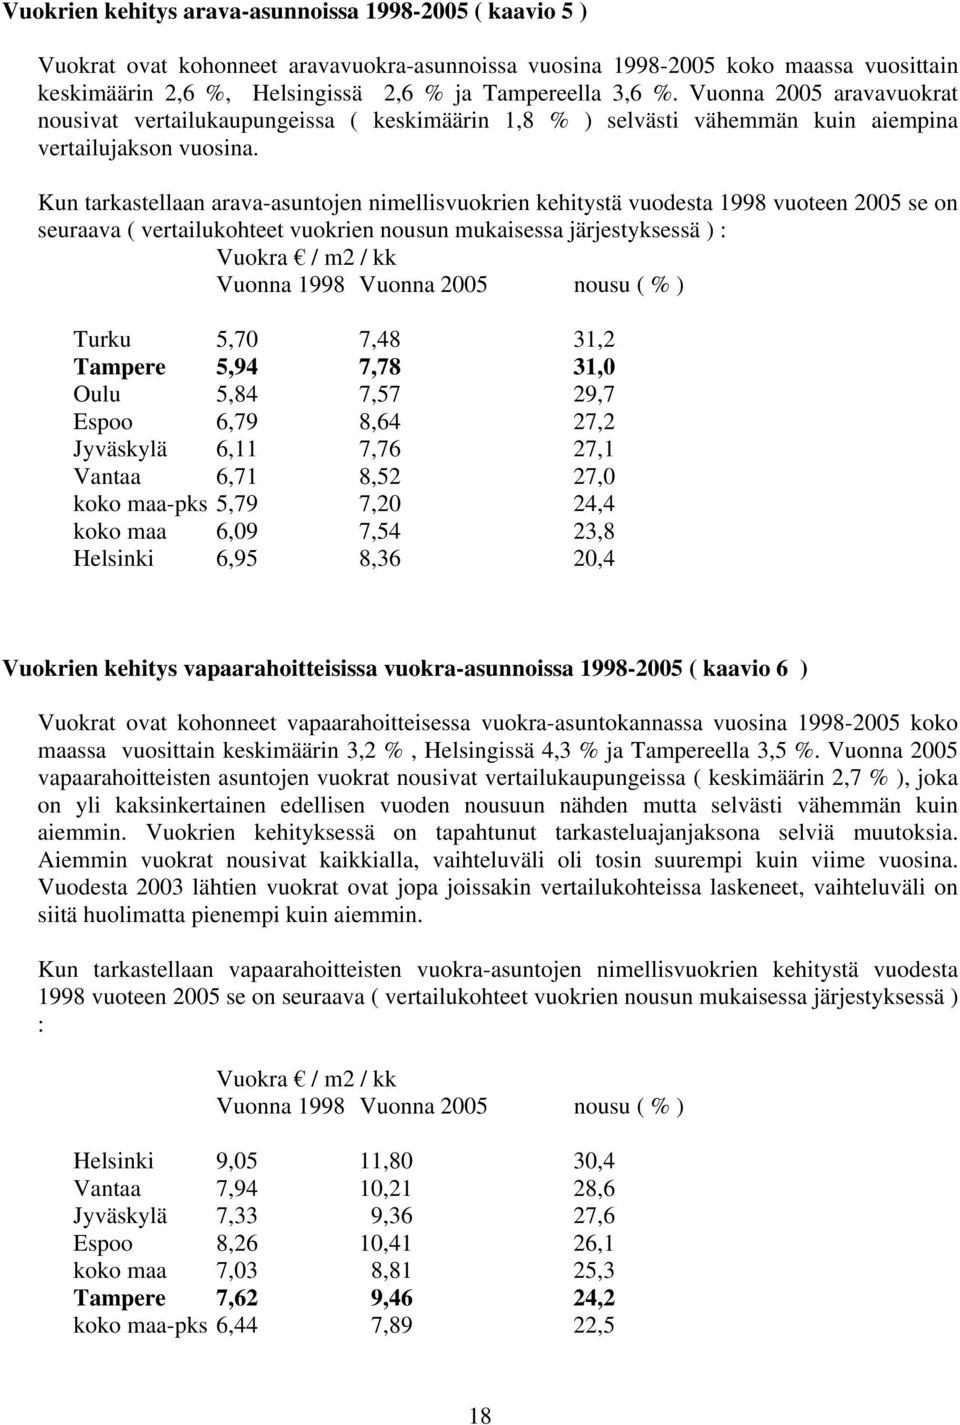 Kun tarkastellaan arava-asuntojen nimellisvuokrien kehitystä vuodesta 1998 vuoteen 2005 se on seuraava ( vertailukohteet vuokrien nousun mukaisessa järjestyksessä ) : Vuokra / m2 / kk Vuonna 1998